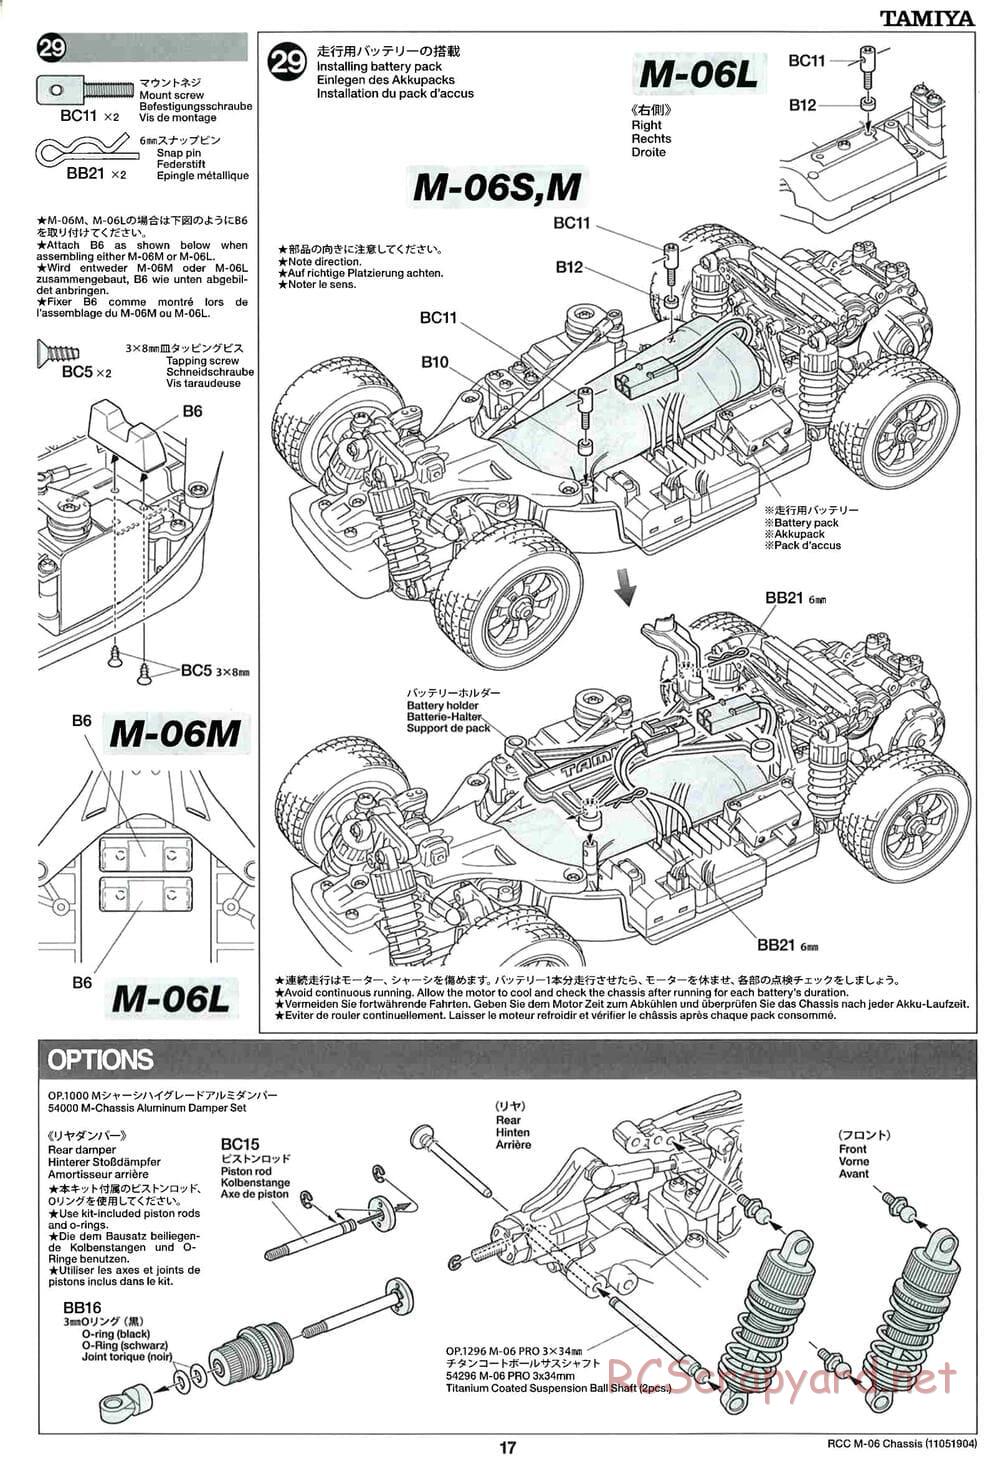 Tamiya - M-06 Chassis - Manual - Page 17